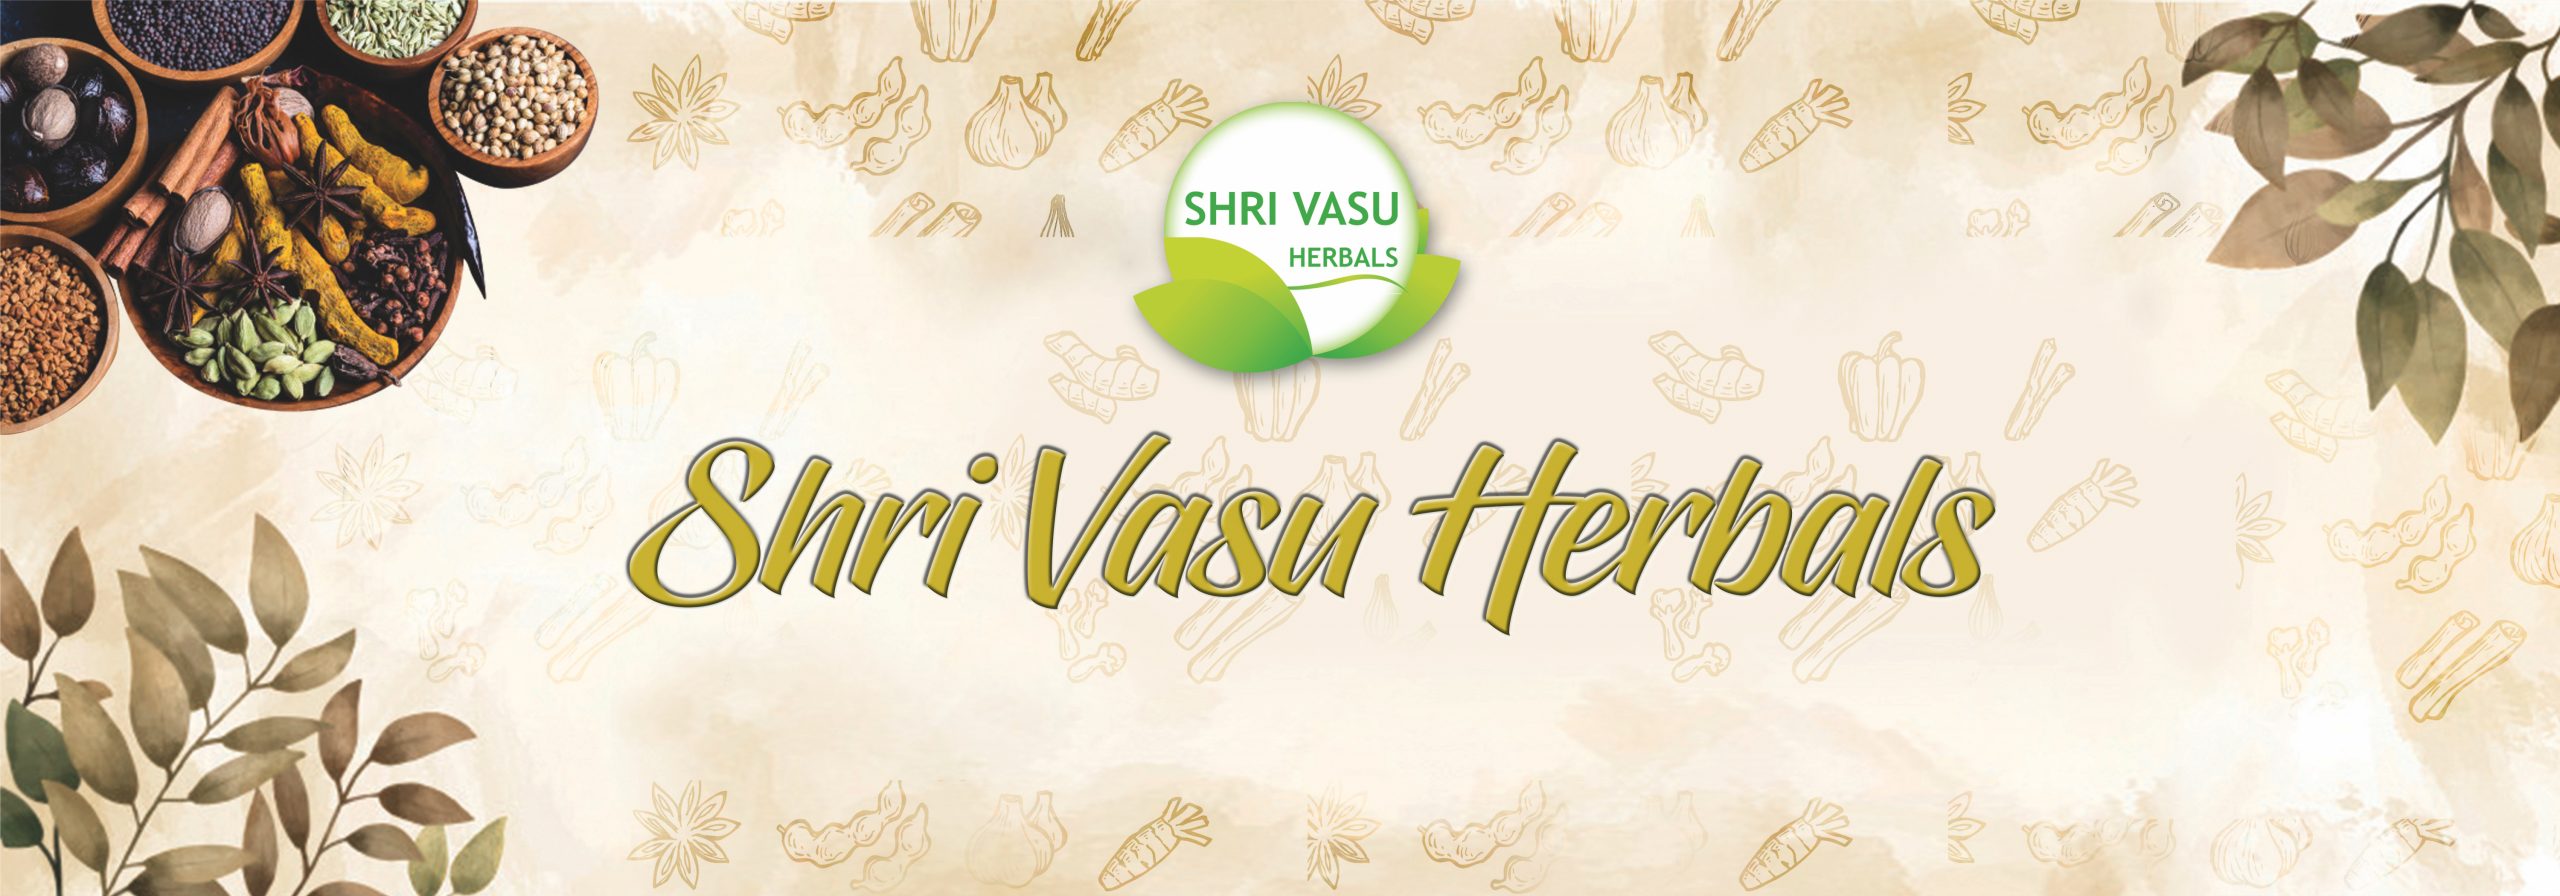 Shri Vasu Herbals Web Page